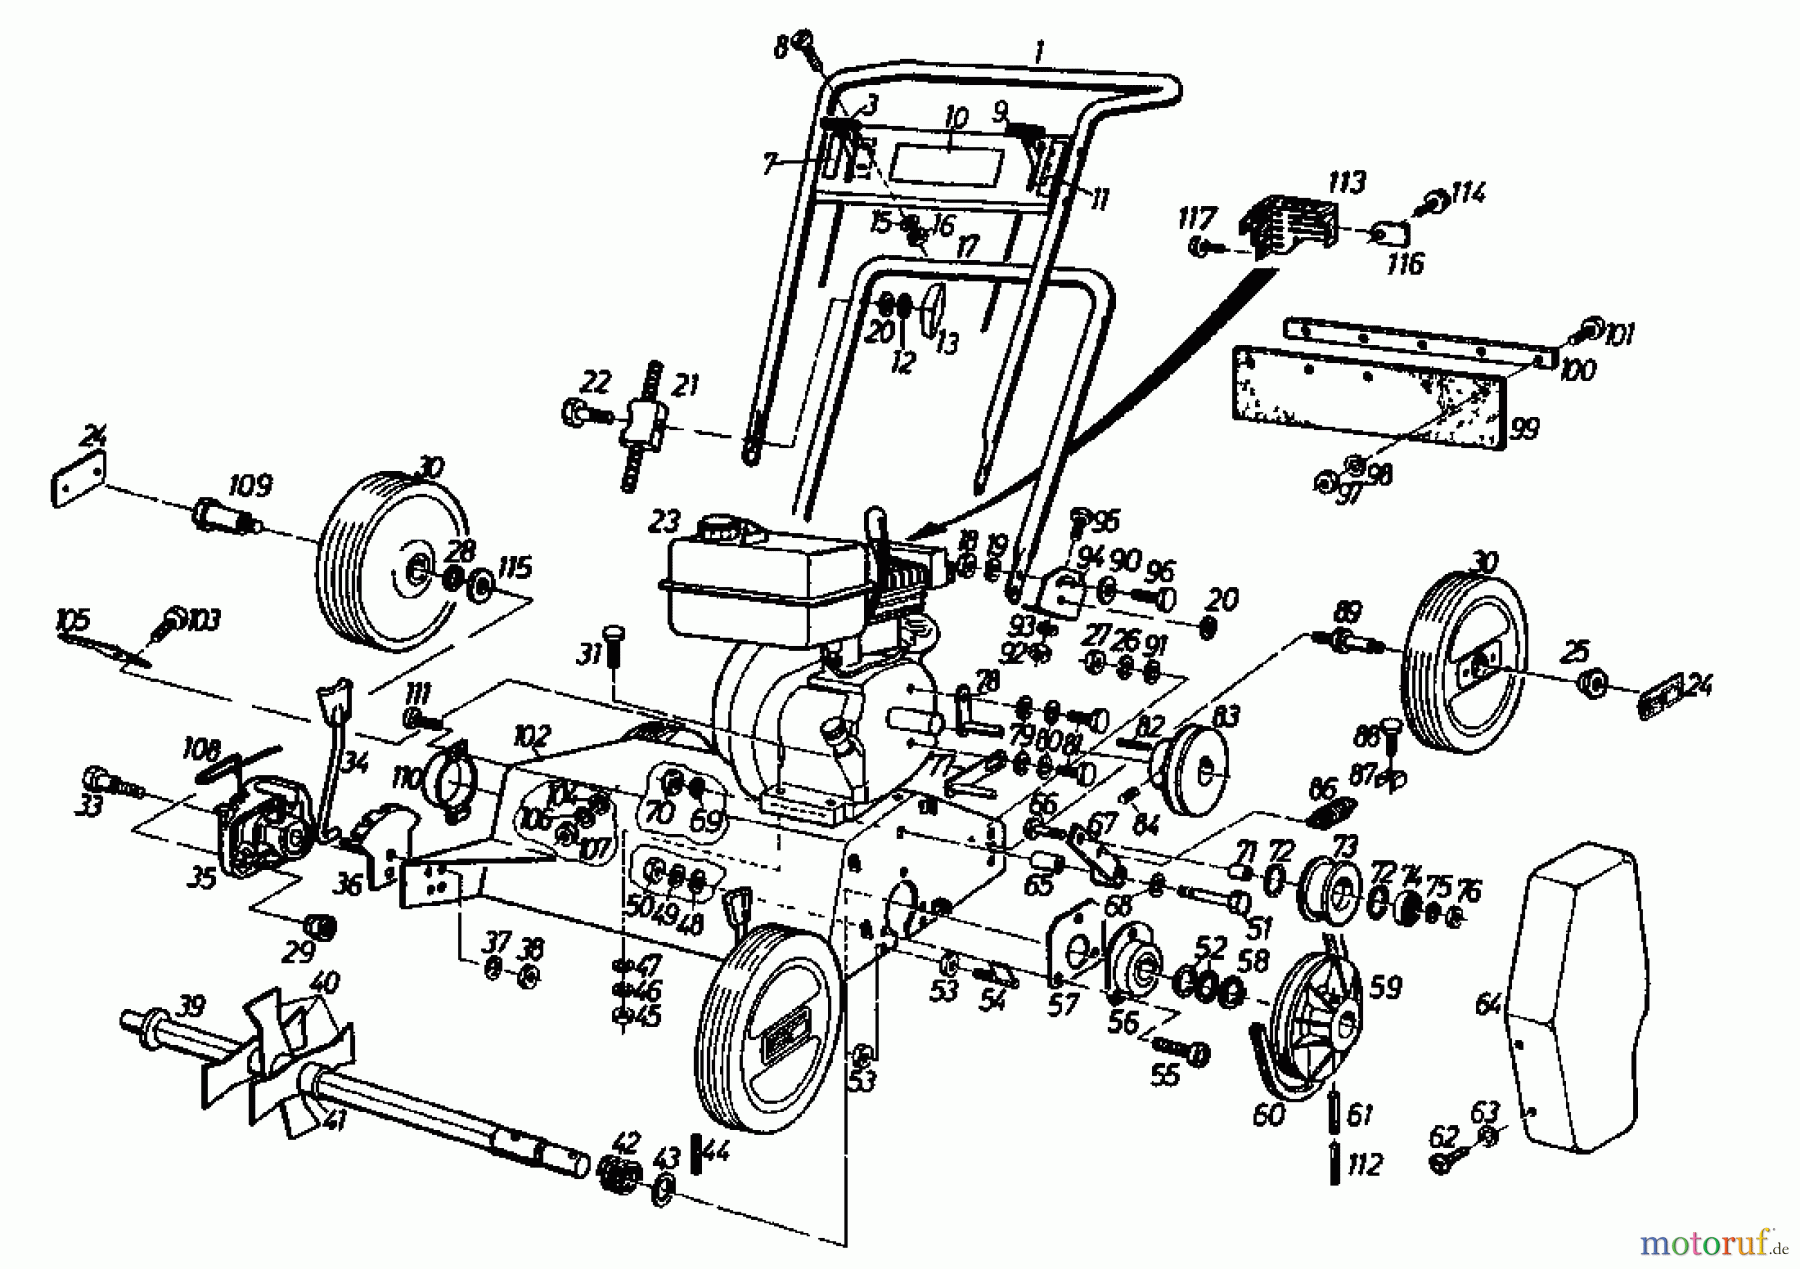  Gutbrod Petrol verticutter VS 40 A 00054.04  (1987) Basic machine